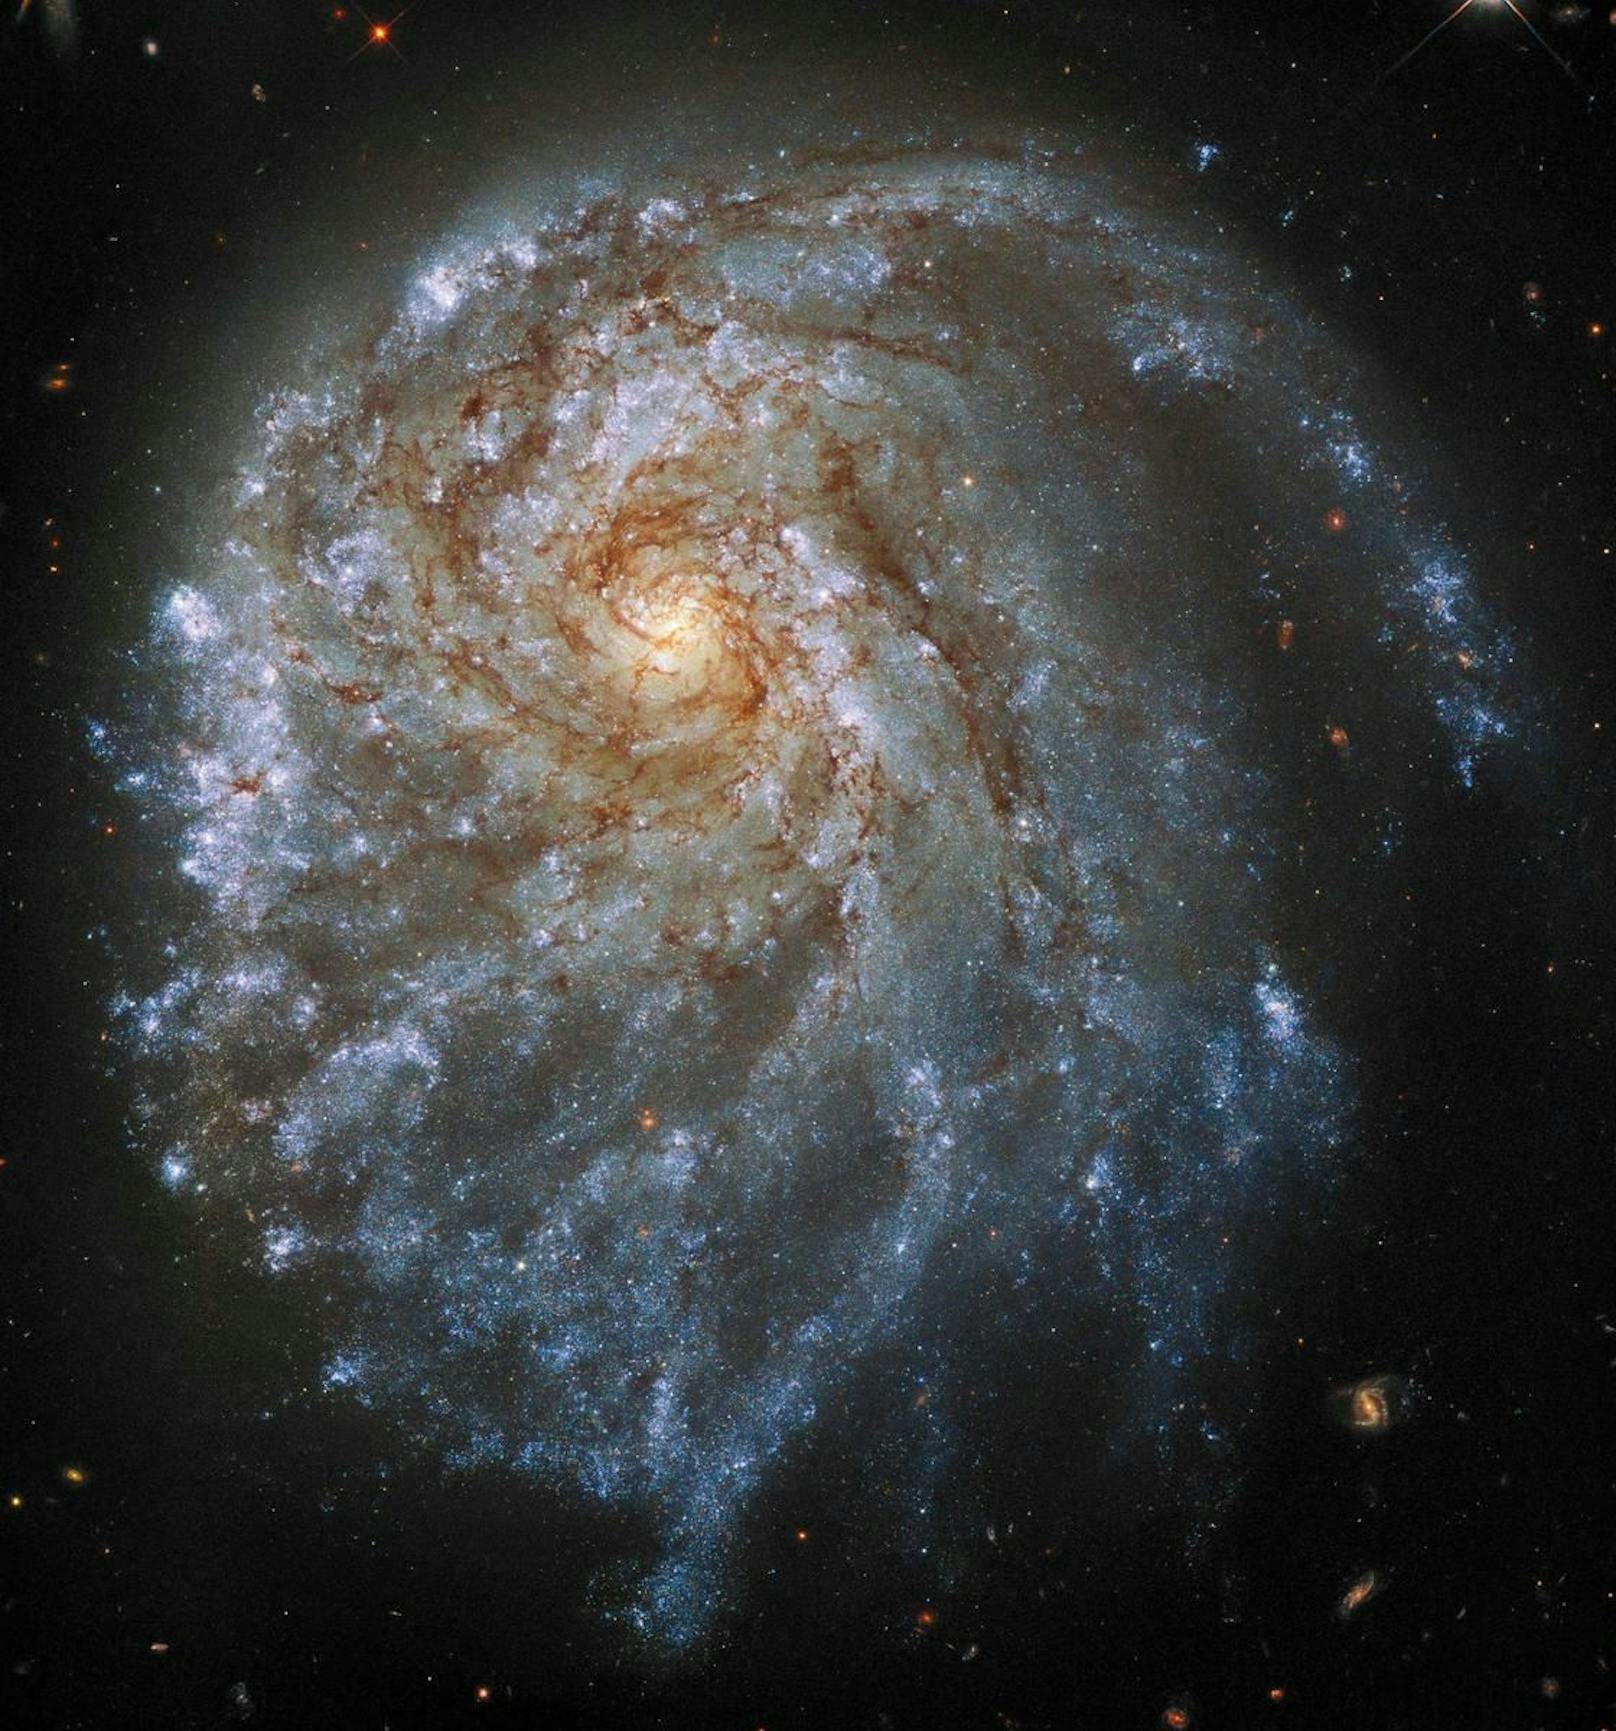 Hier sehen wir einen Arm der Spiral-Galaxie NGC 2276, die sich 120 Millionen Lichtjahre entfernt befindet.